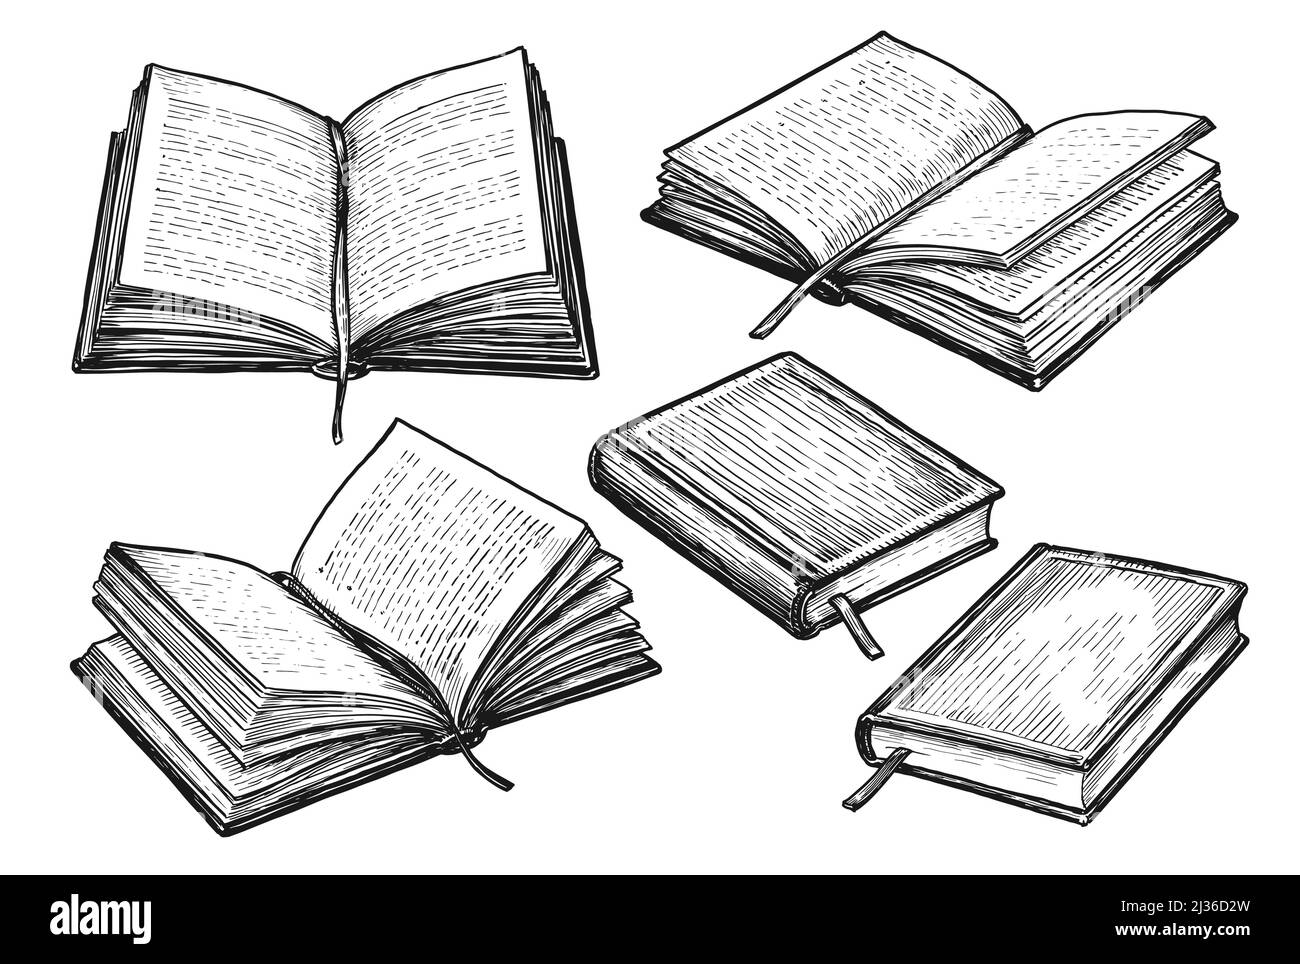 Collezione di libri. Illustrazione vettoriale disegnata a mano in stile di schizzo Illustrazione Vettoriale